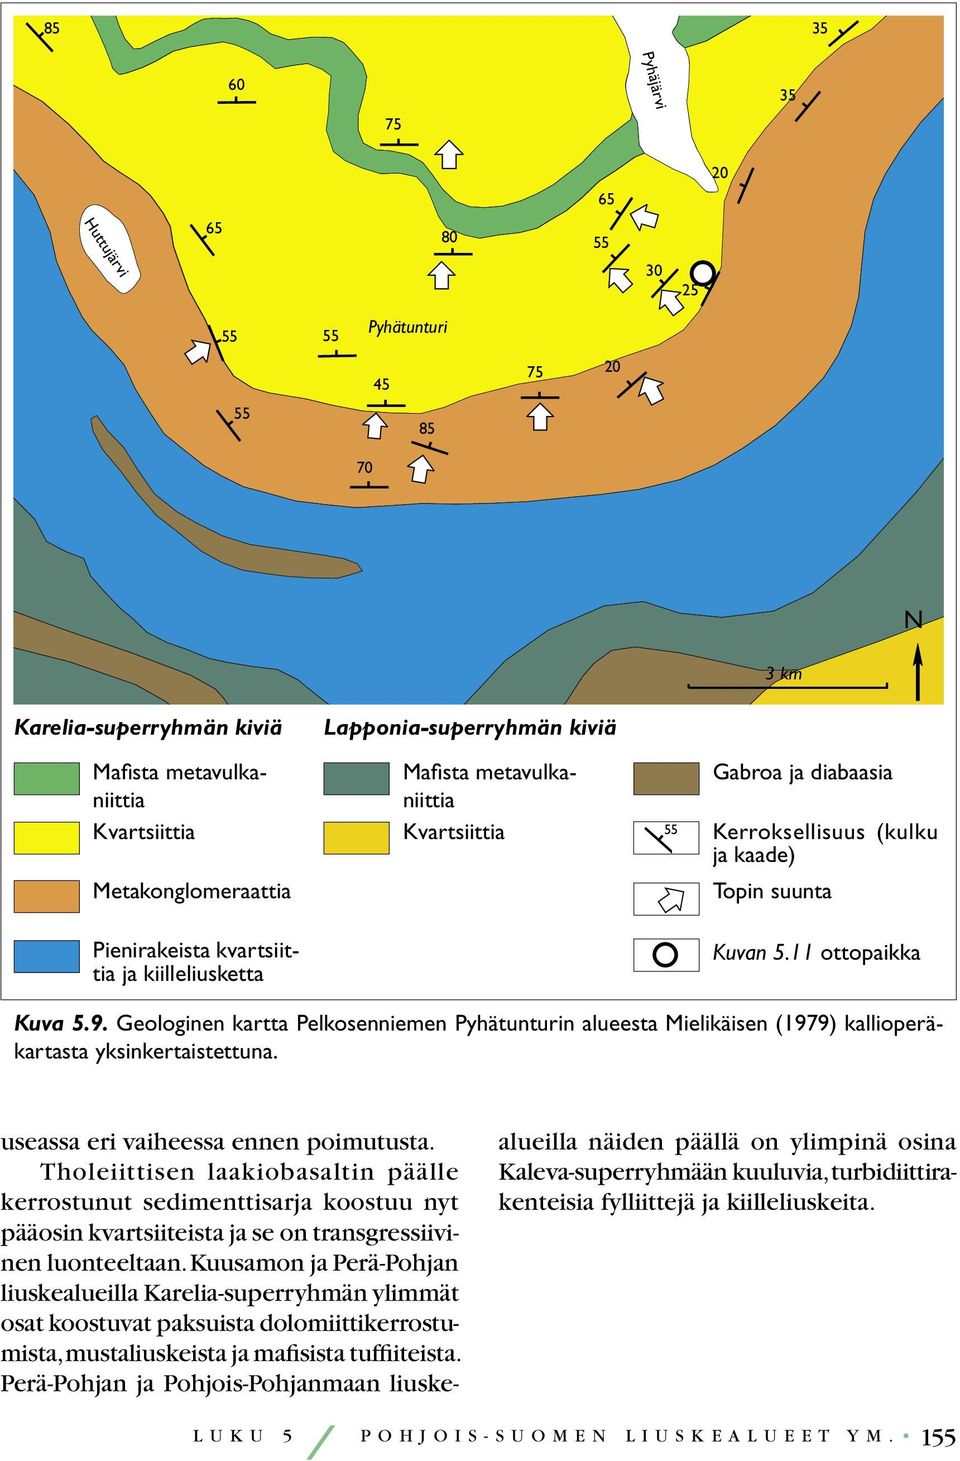 Pohjois-Suomen noin 2 440 miljoonaa vuotta vanhat (Kouvo 1977) kerrosintruusiot ovat tärkeä geologinen kokonaisuus mm. malminetsinnän kannalta.